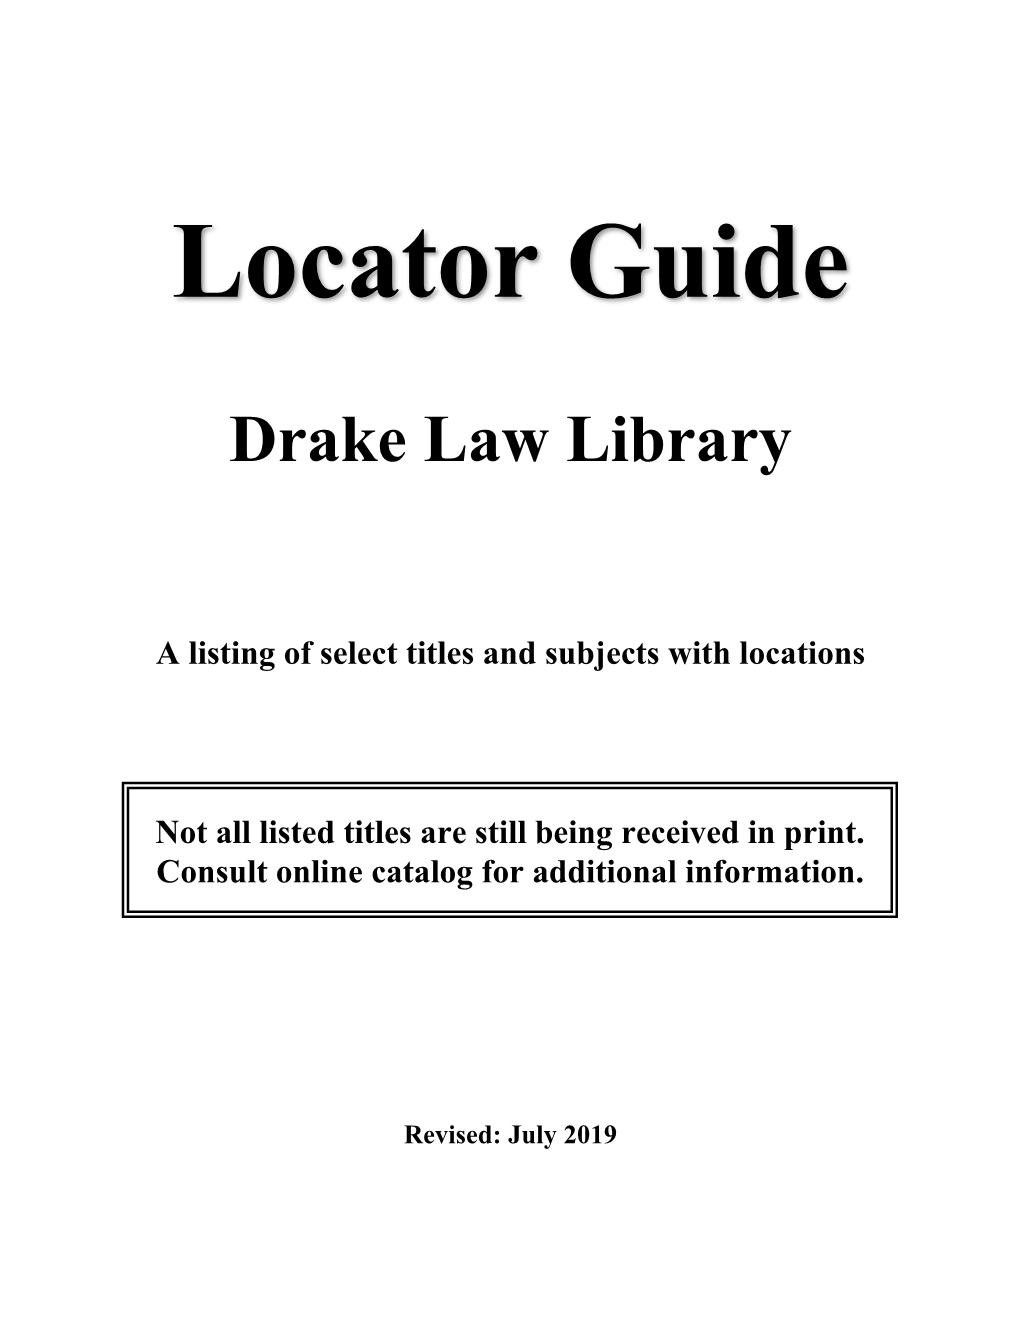 Library Locator Guide